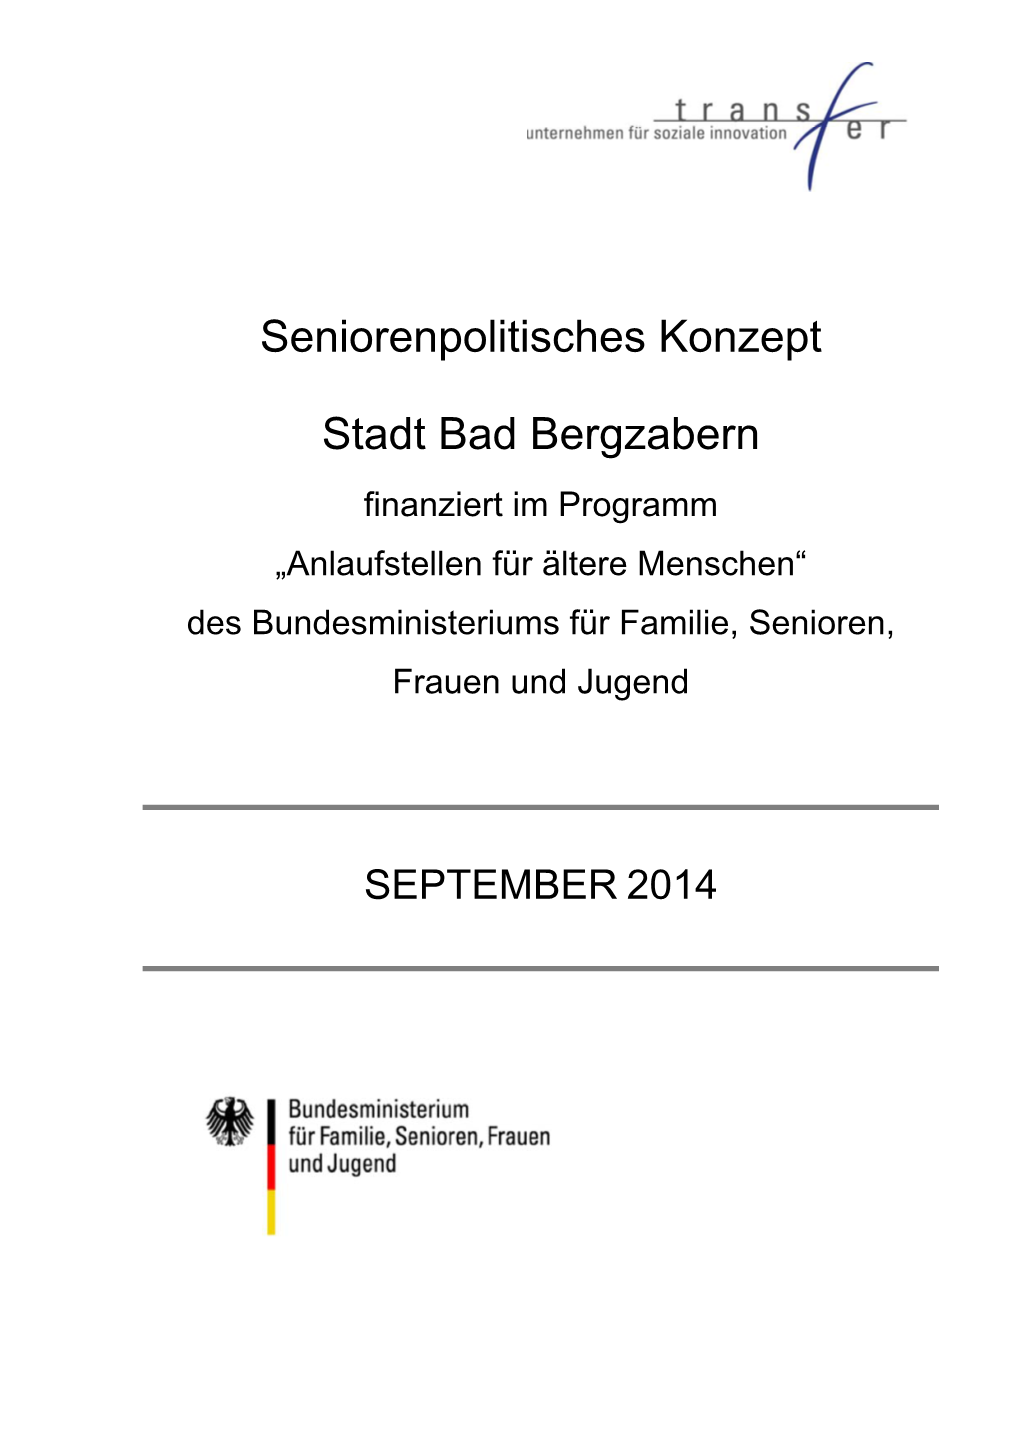 Seniorenpolitisches Konzept Stadt Bad Bergzabern